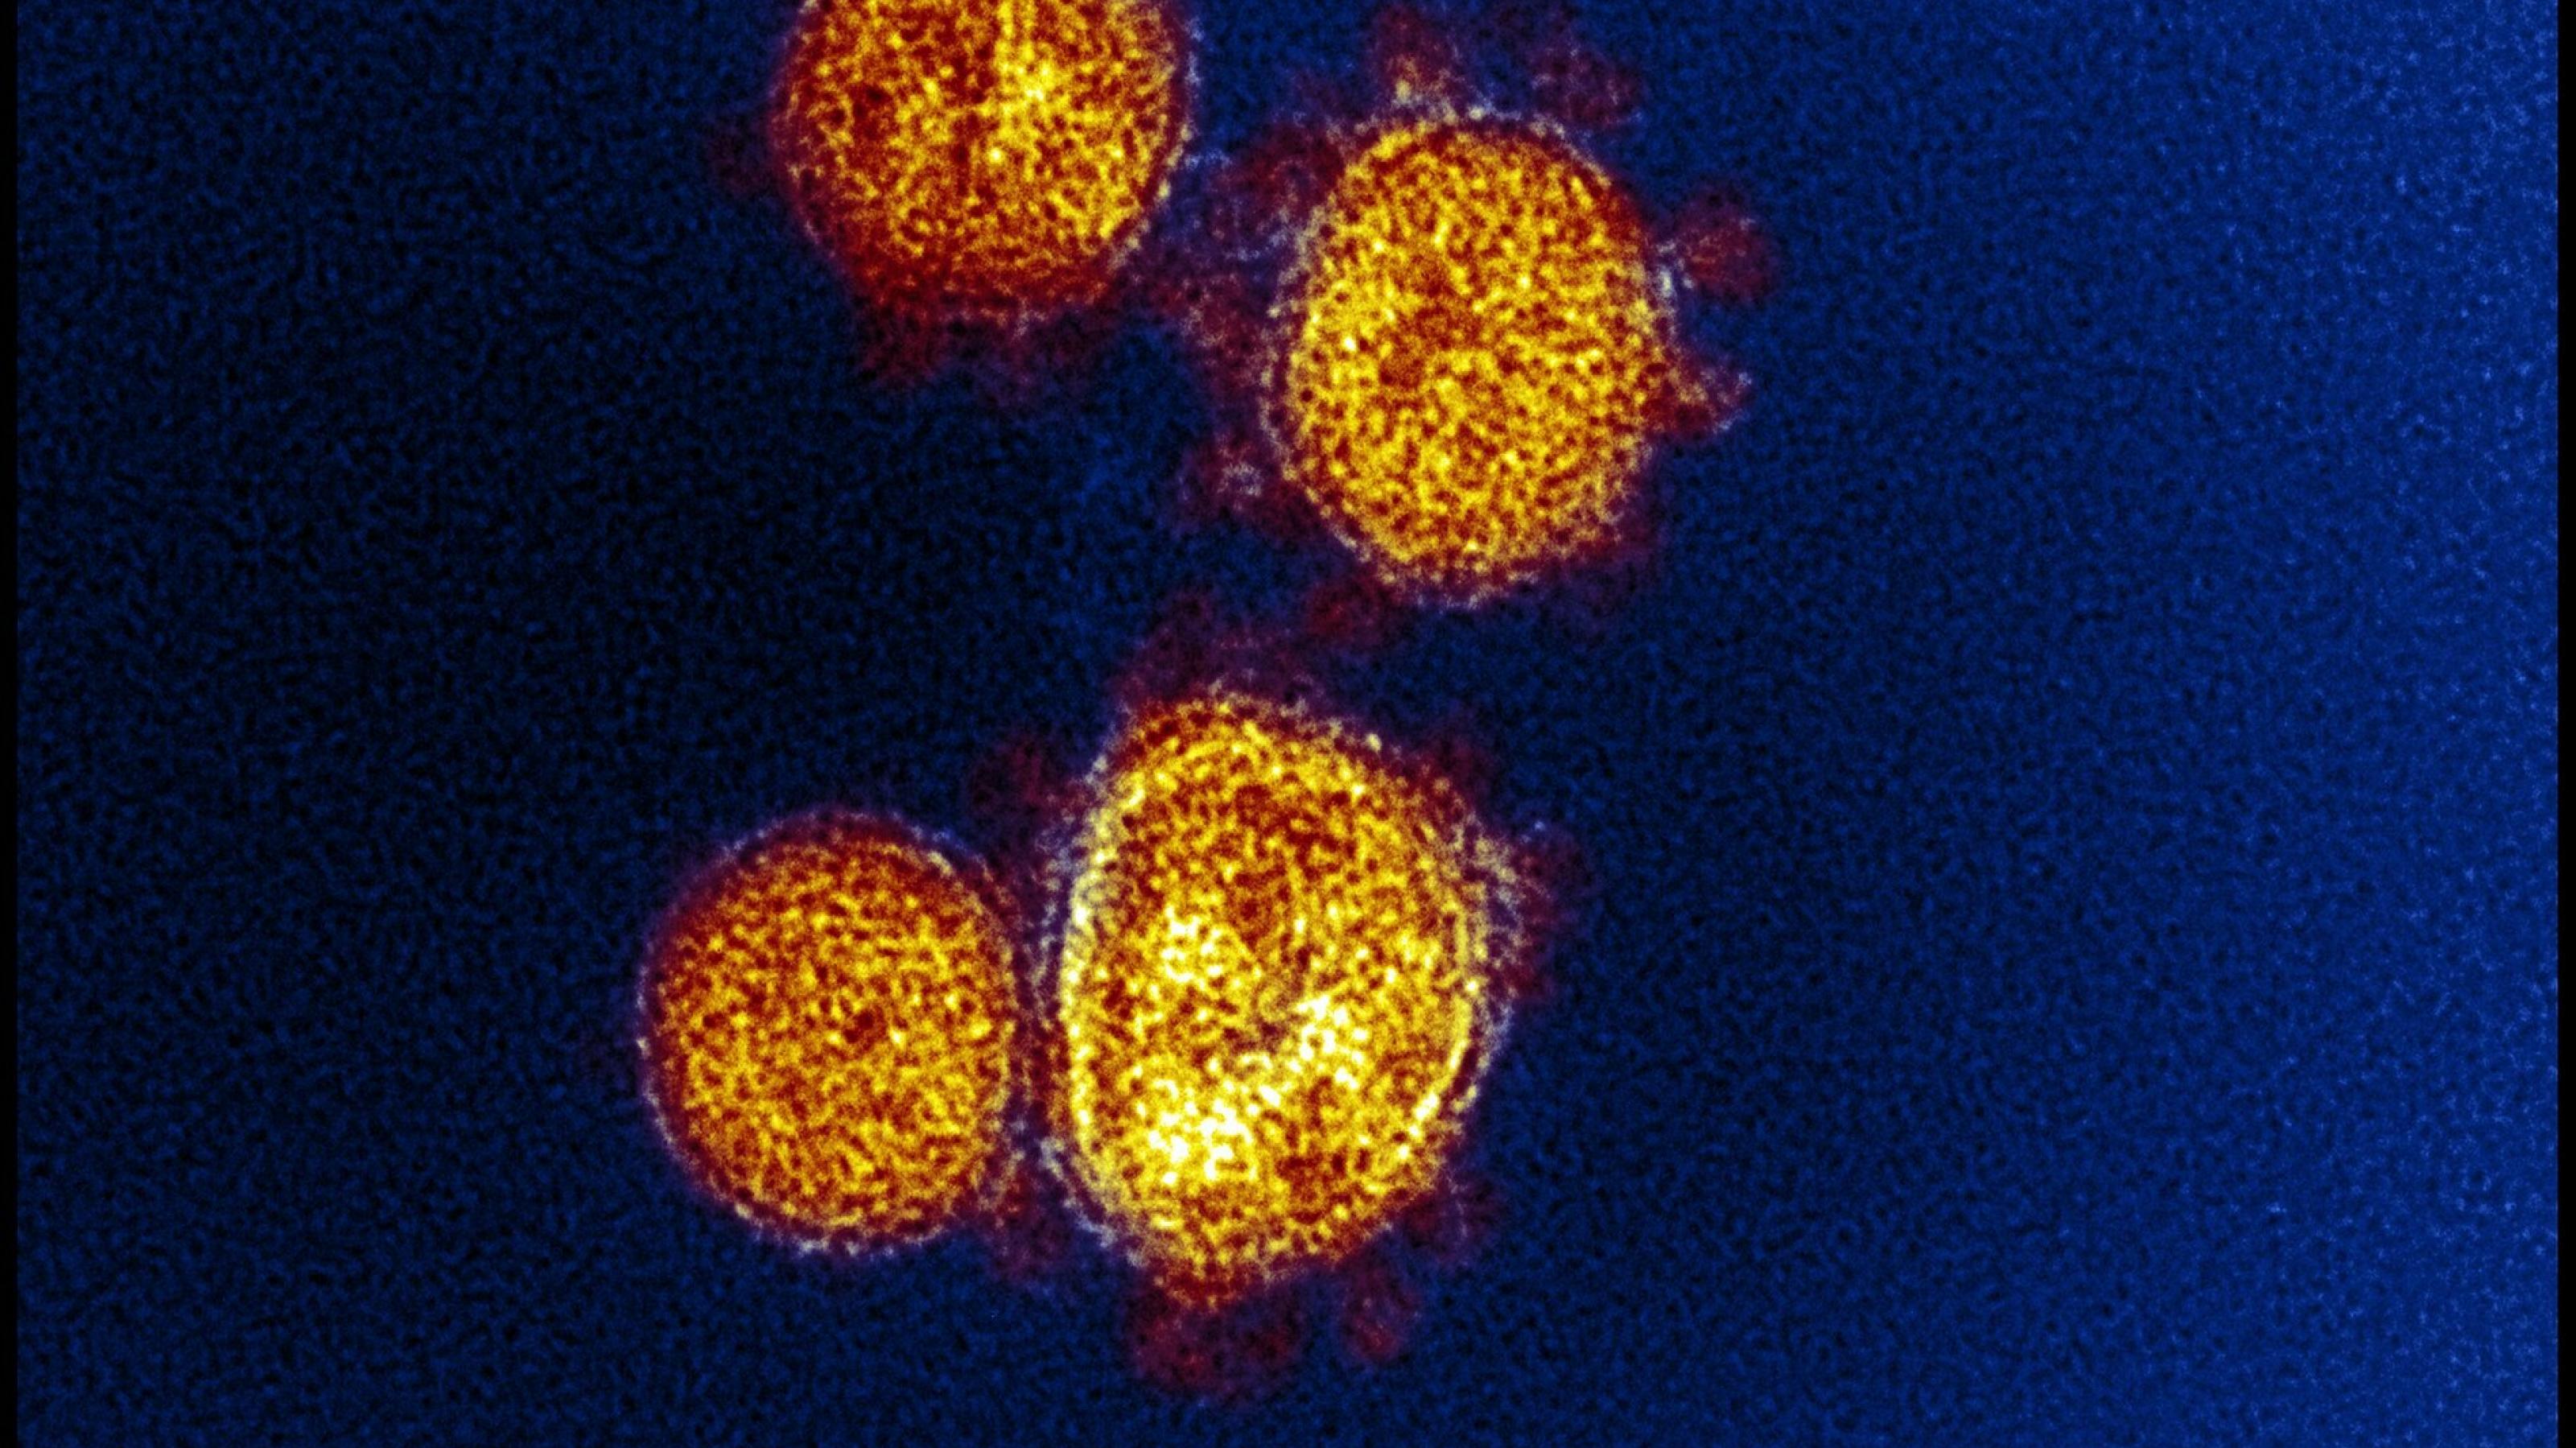 Elektronenmikroskopische Aufnahme von Sars-CoV-2, Viruspartikel gelb, Spikeproteine rot vor blauem Hintergrund.